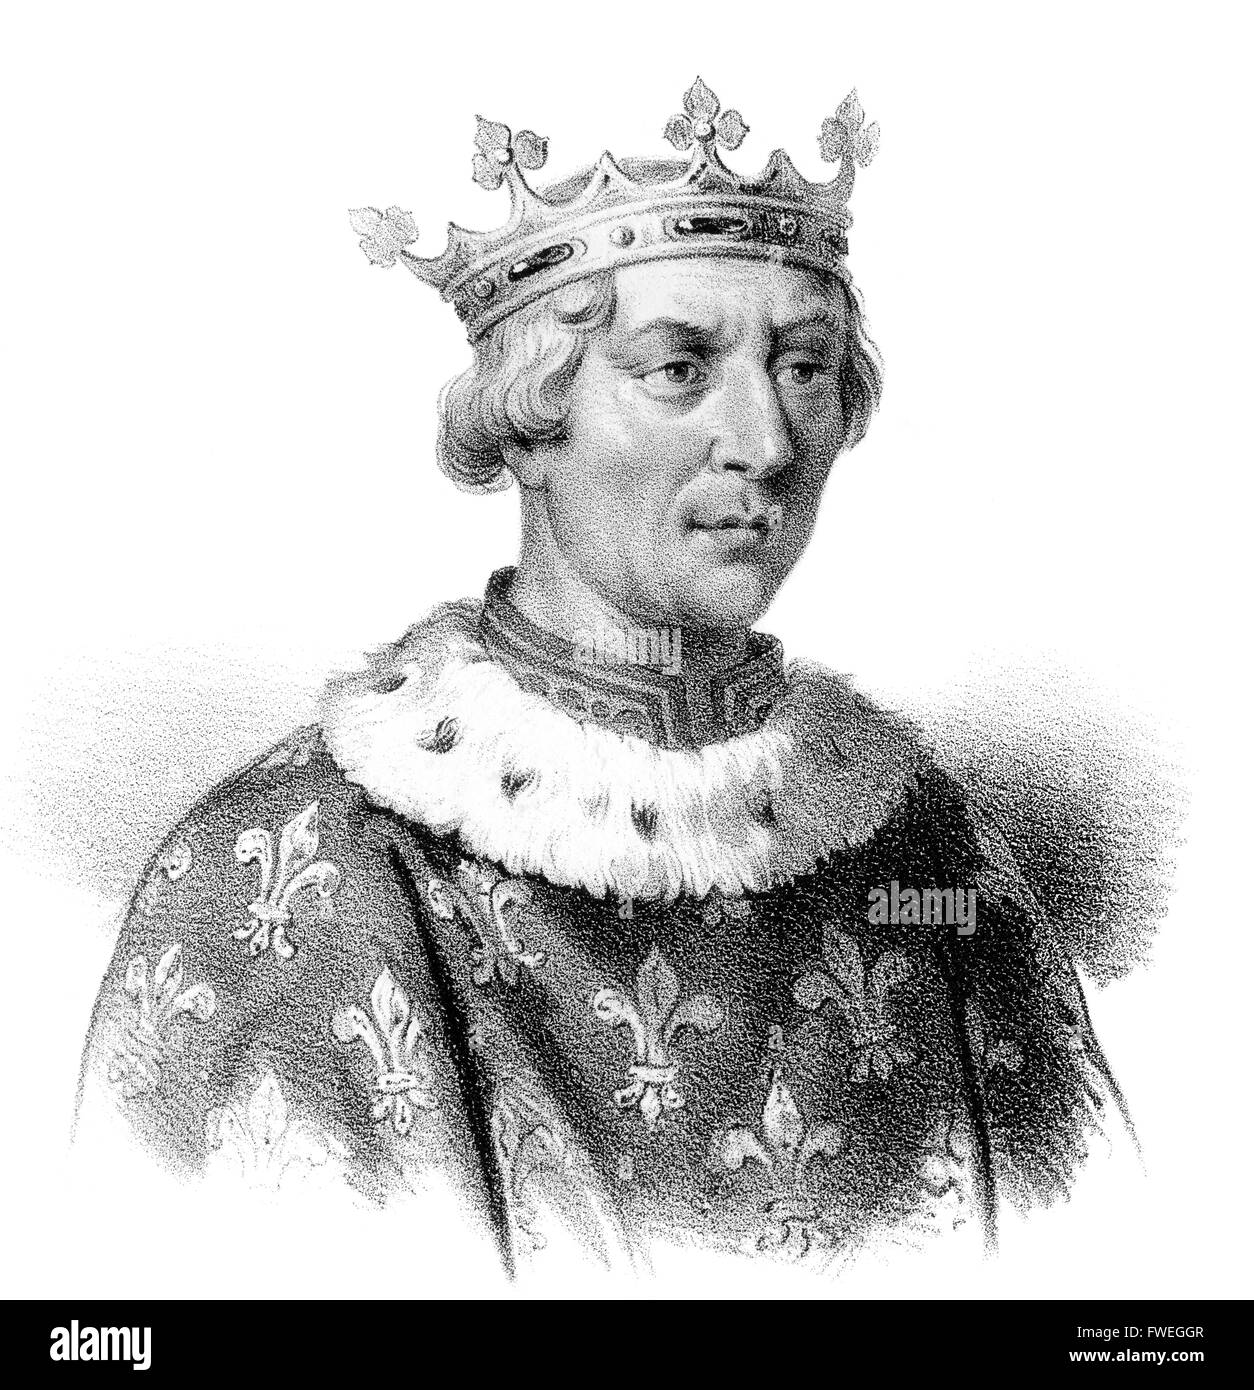 Luigi VIII il leone, Ludwig VIII., 1187-1226, re di Francia dalla casa di Capet, re d'Inghilterra Foto Stock